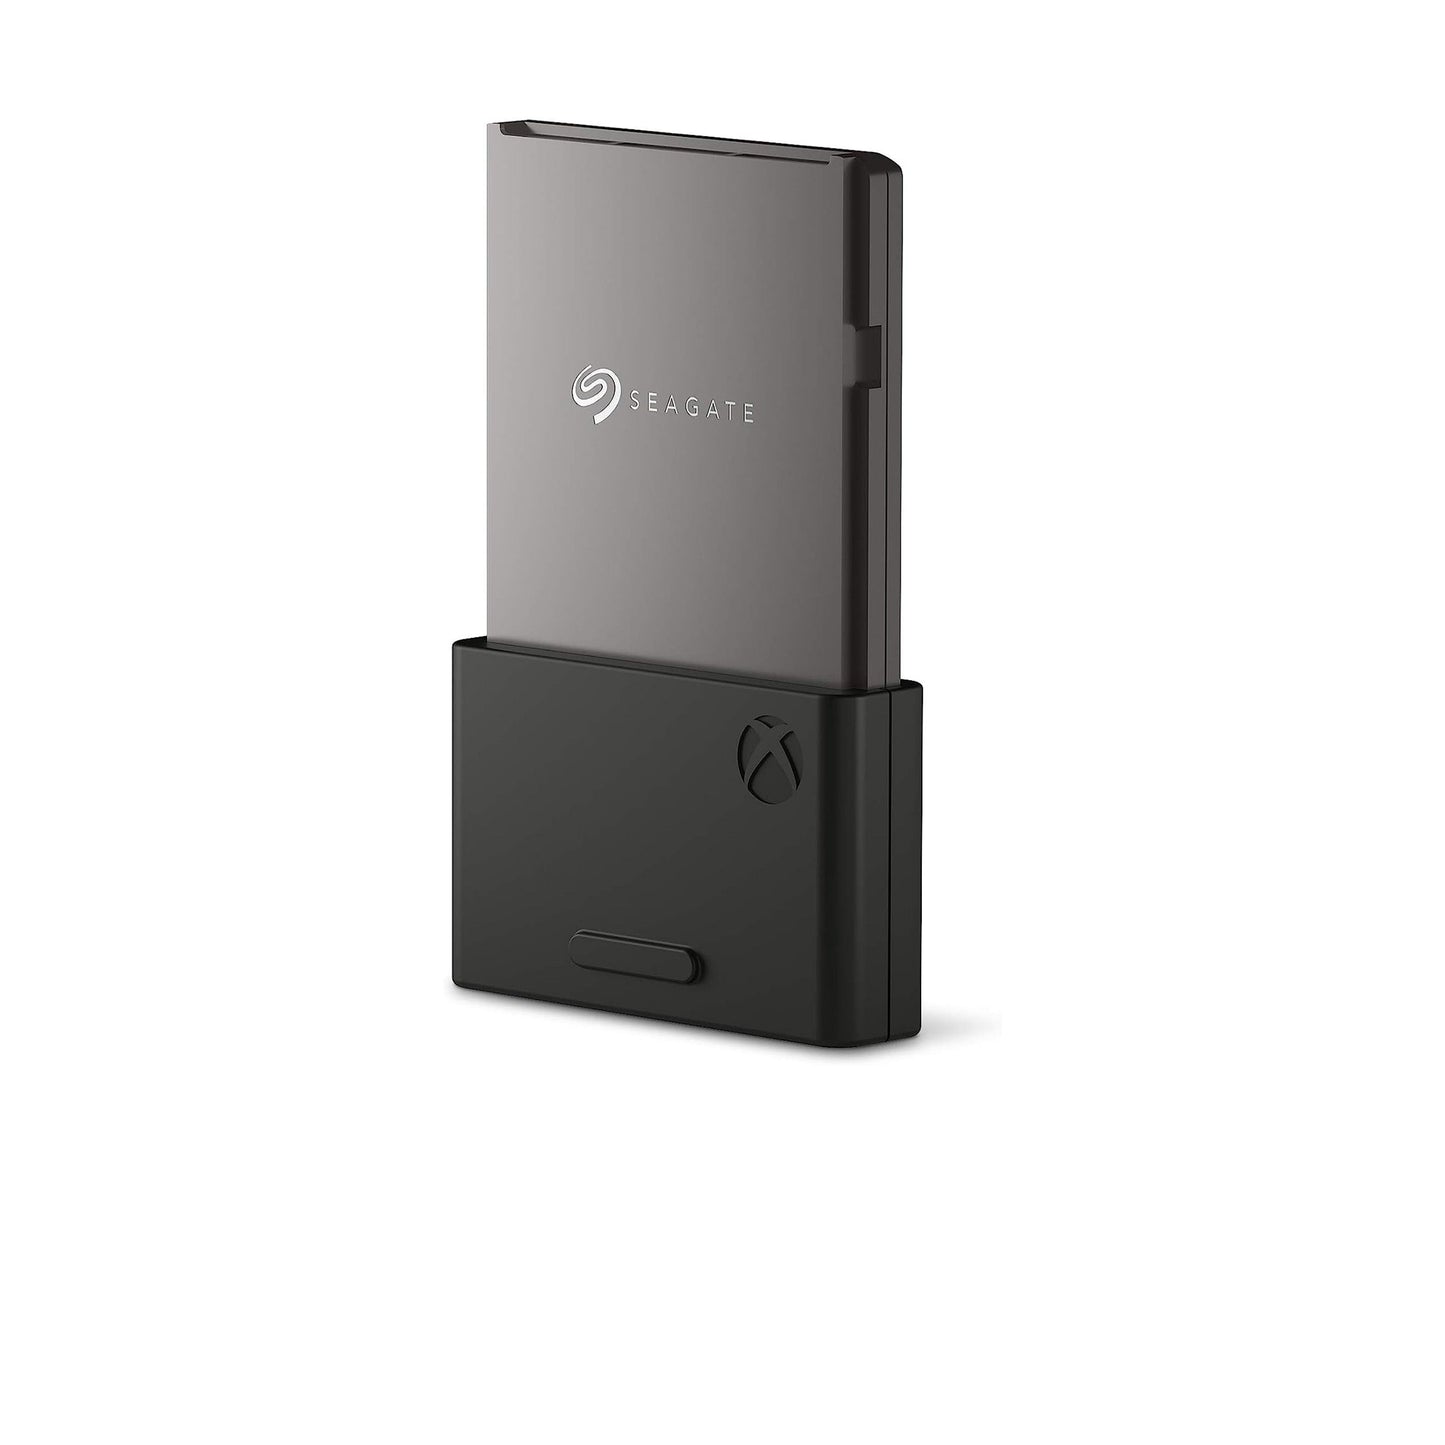 بطاقة توسيع التخزين Seagate محرك أقراص الحالة الصلبة سعة 2 تيرابايت - NVMe SSD لأجهزة Xbox Series X|S، استئناف سريع، التوصيل والتشغيل، مرخص (STJR2000400) أسود 